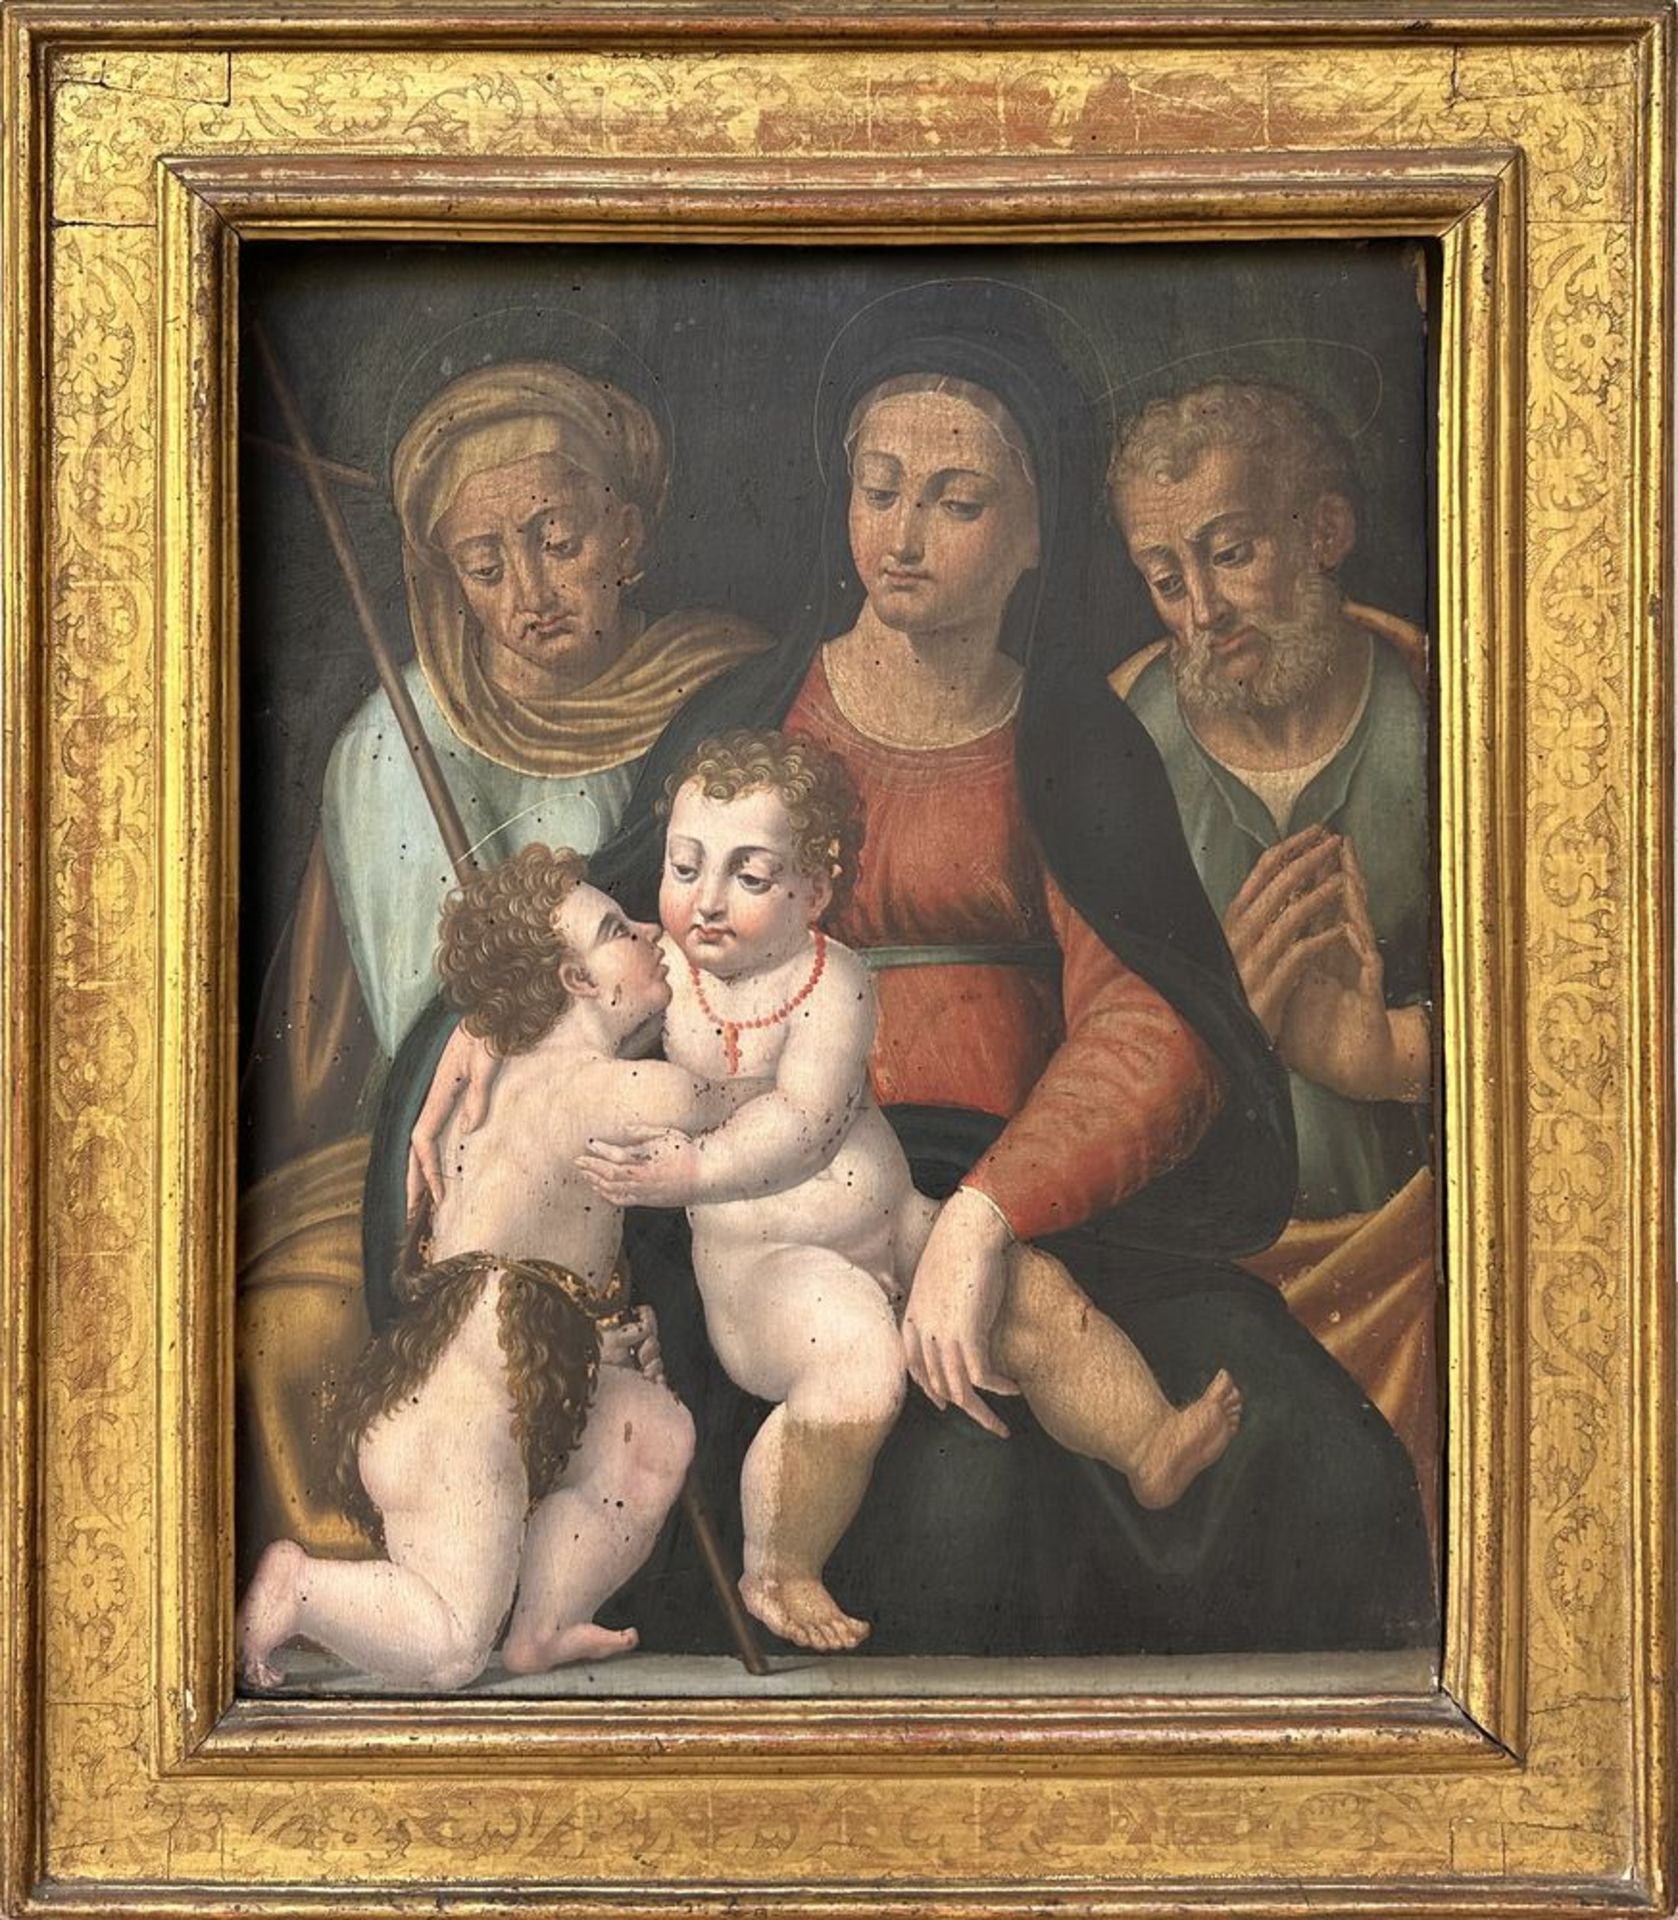 Ambito di Bartolomeo Ramenghi, detto Bagnacavallo, Romagna, XVI secolo. "Sacra conversazione". Olio